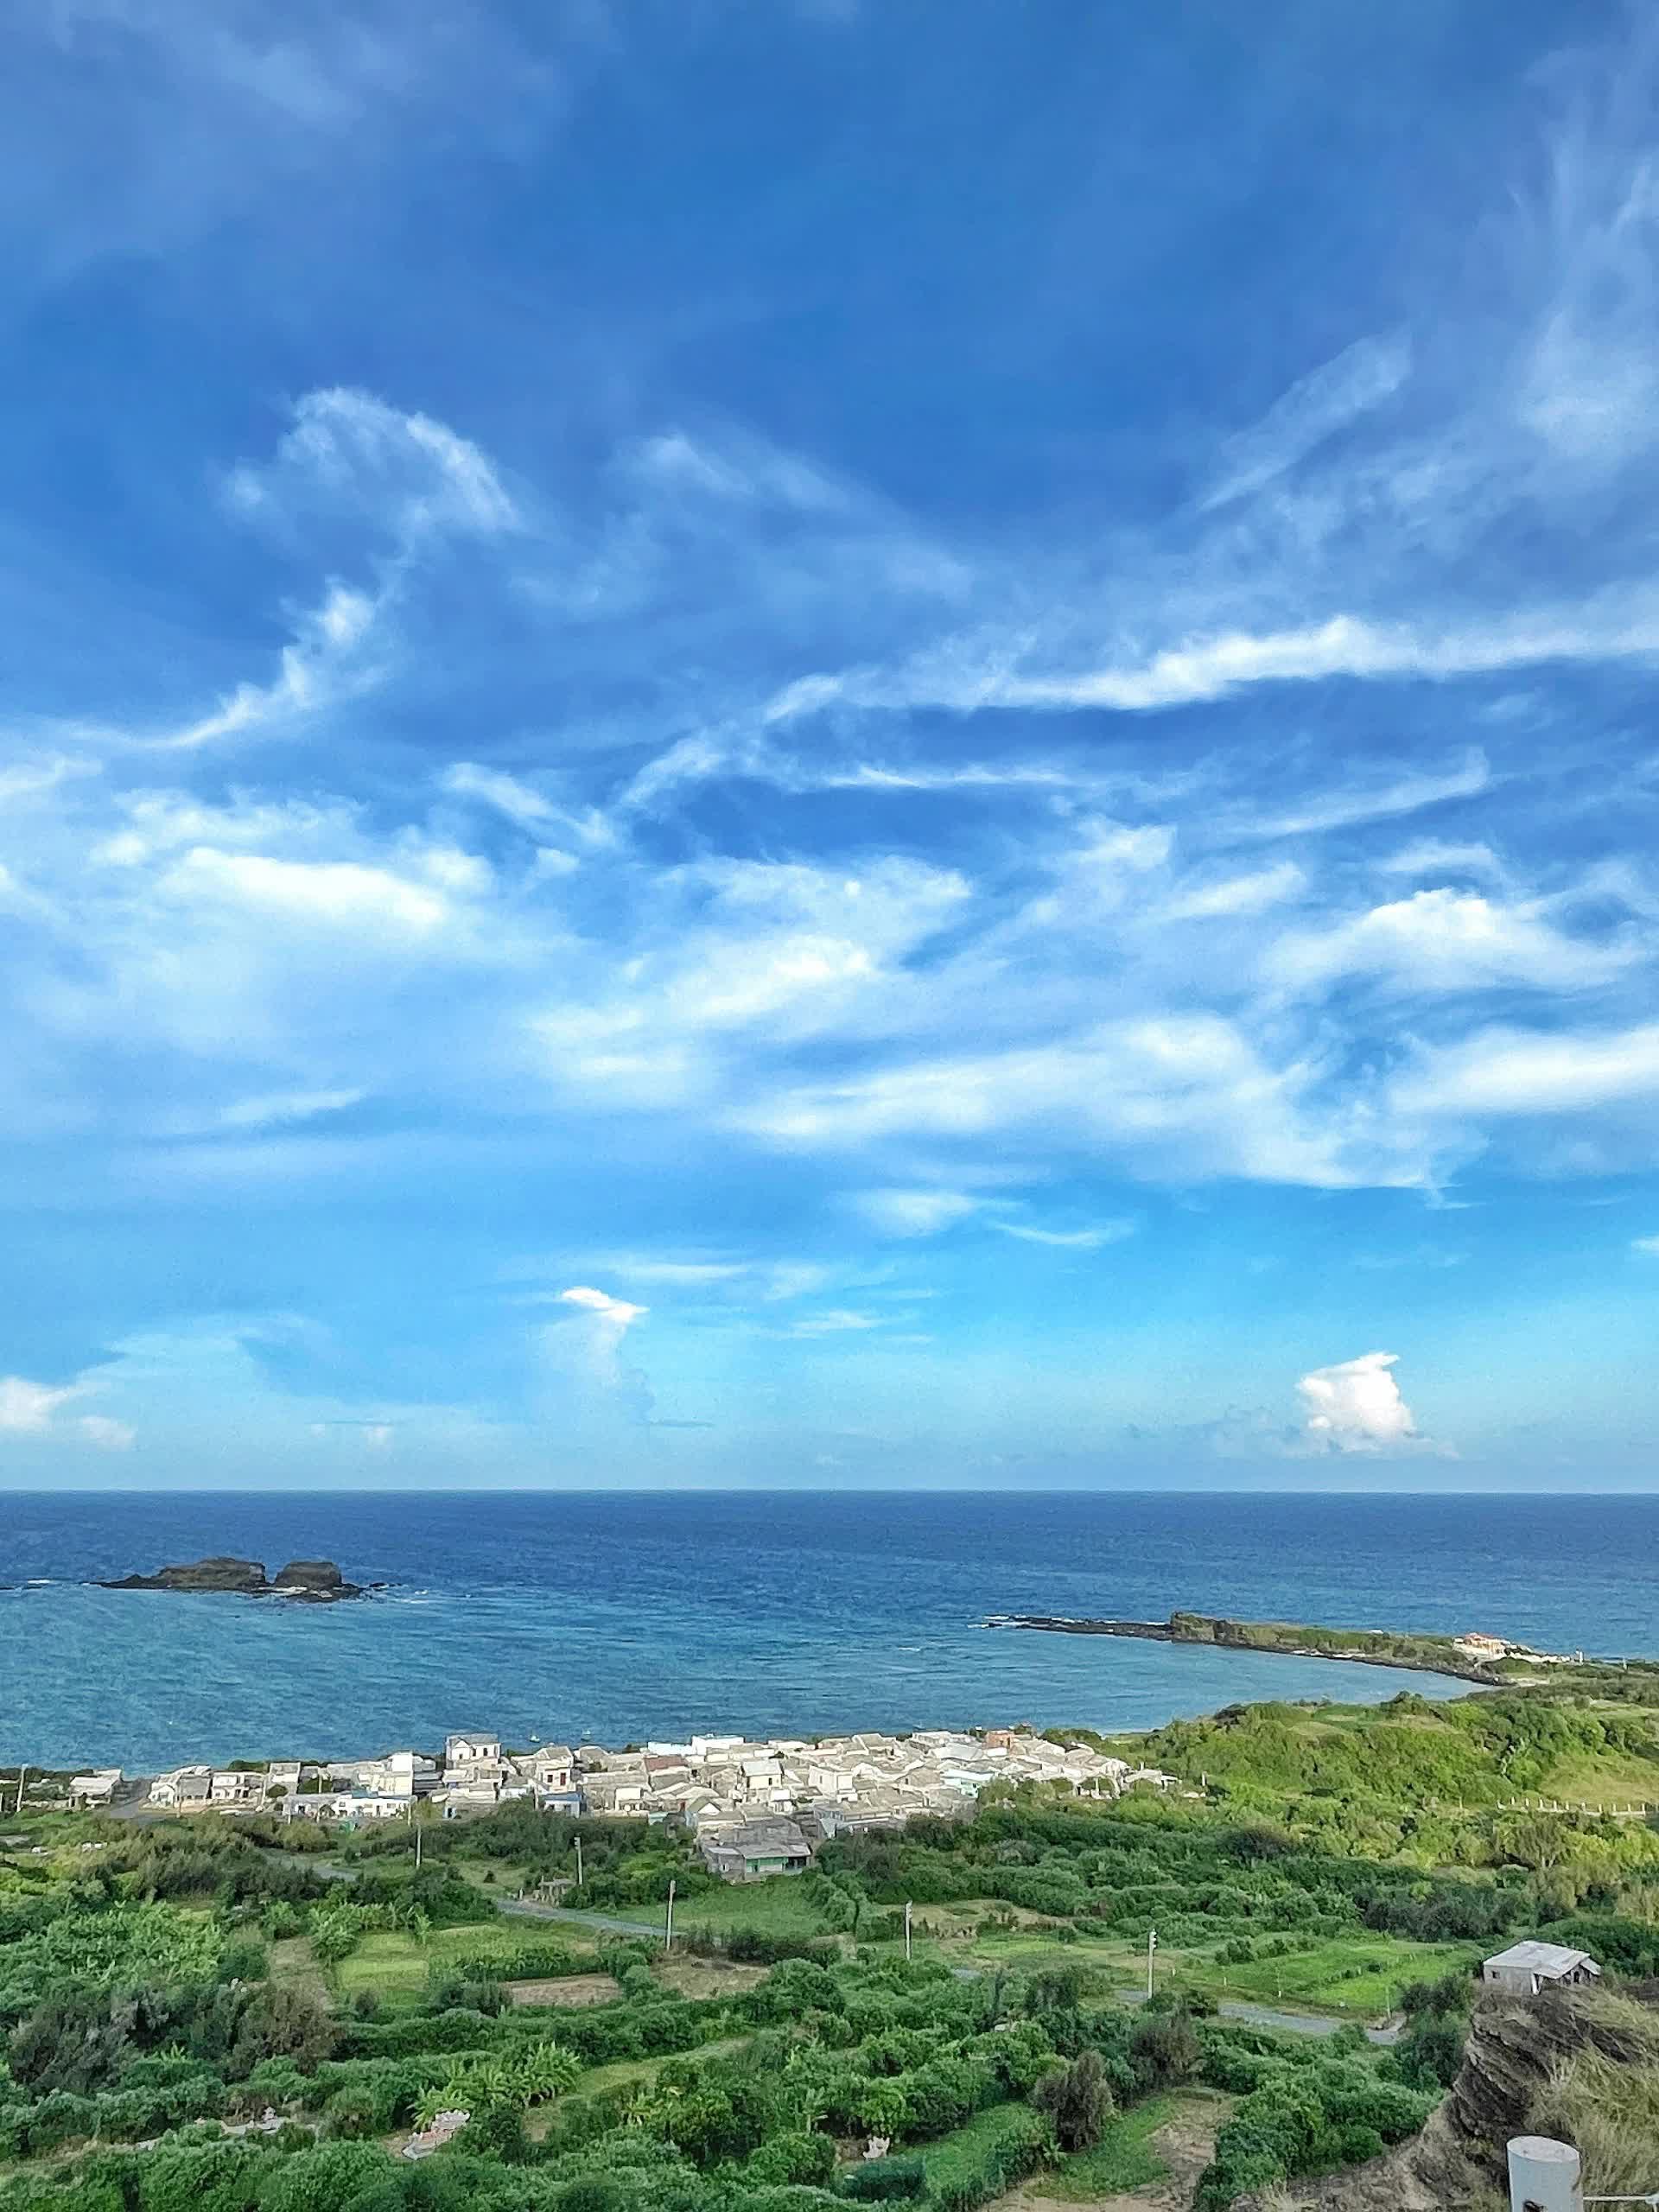 Đi du lịch đảo Phú Quý chỉ hơn 2 triệu/người mà có cả trăm ảnh check-in siêu đẹp và đây là lịch trình để chị em tham khảo- Ảnh 27.